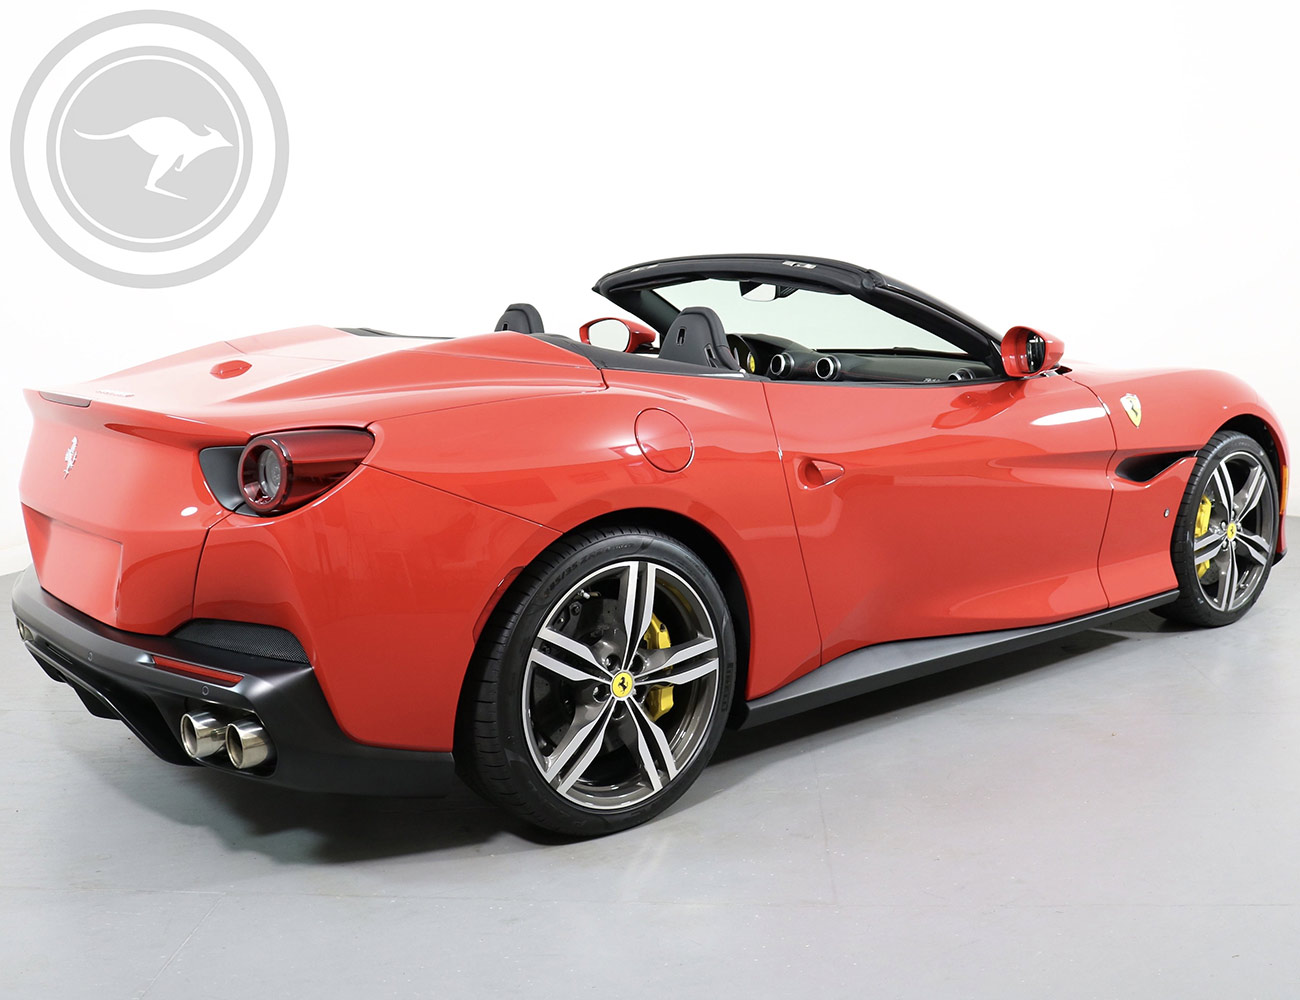 Rent Ferrari Portofino DCT Convertible in Italy or French Riviera